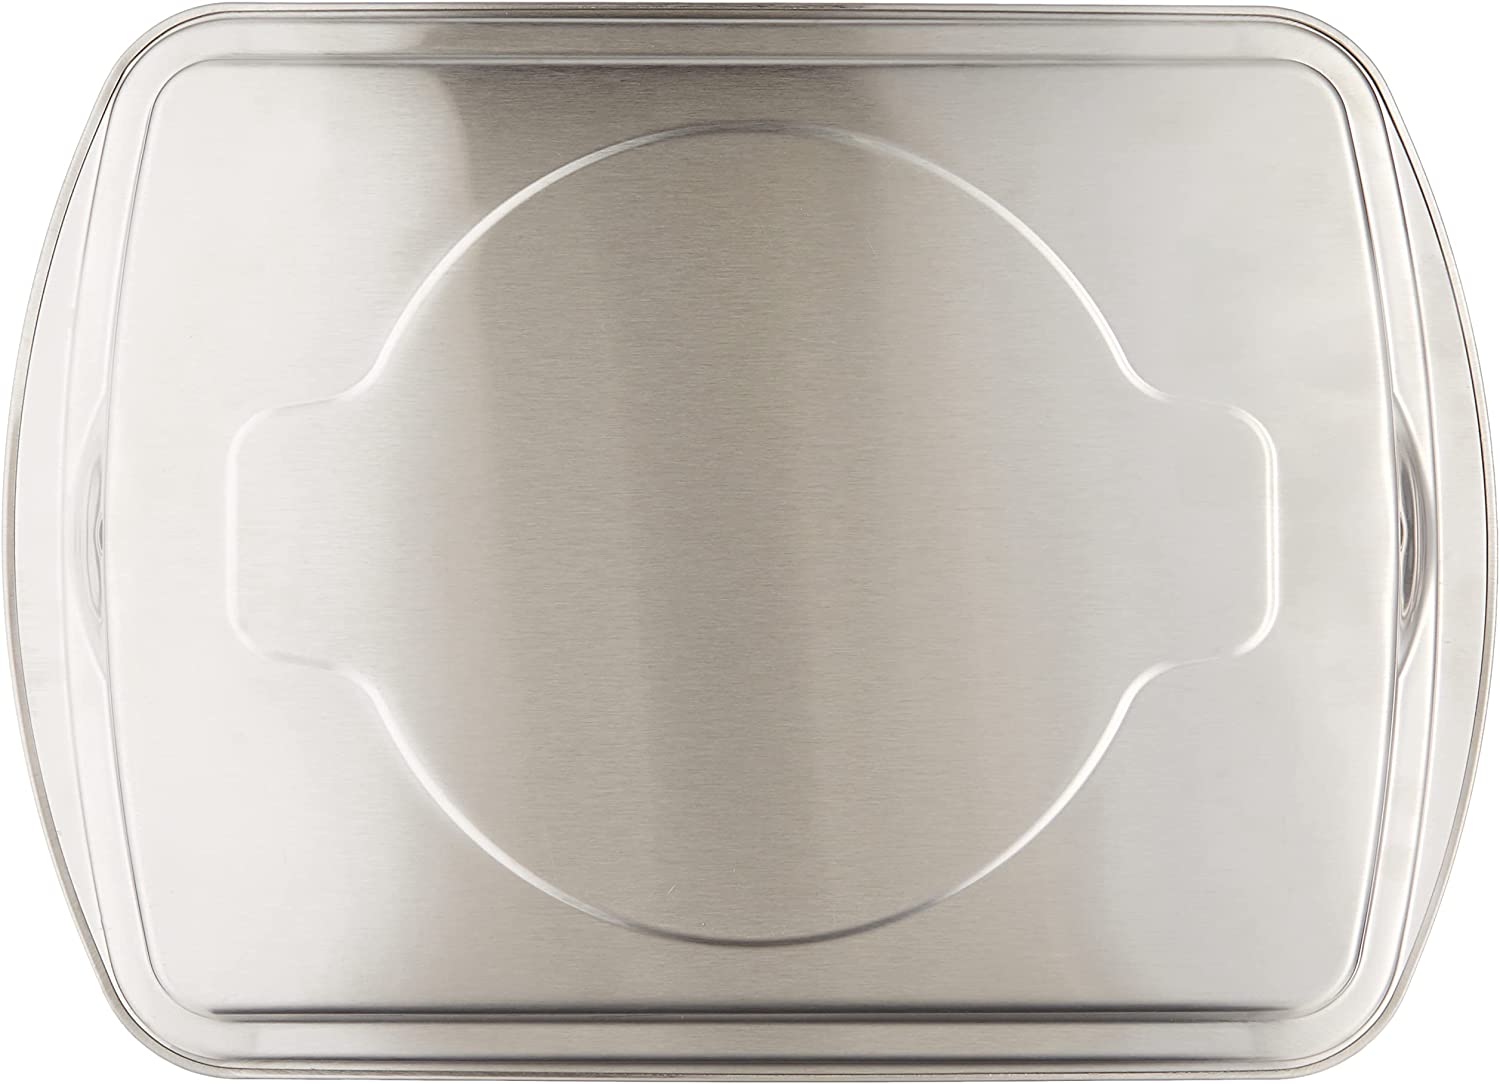 Charola con parrilla incluida aluminio 38 x 29 cm Nordicware